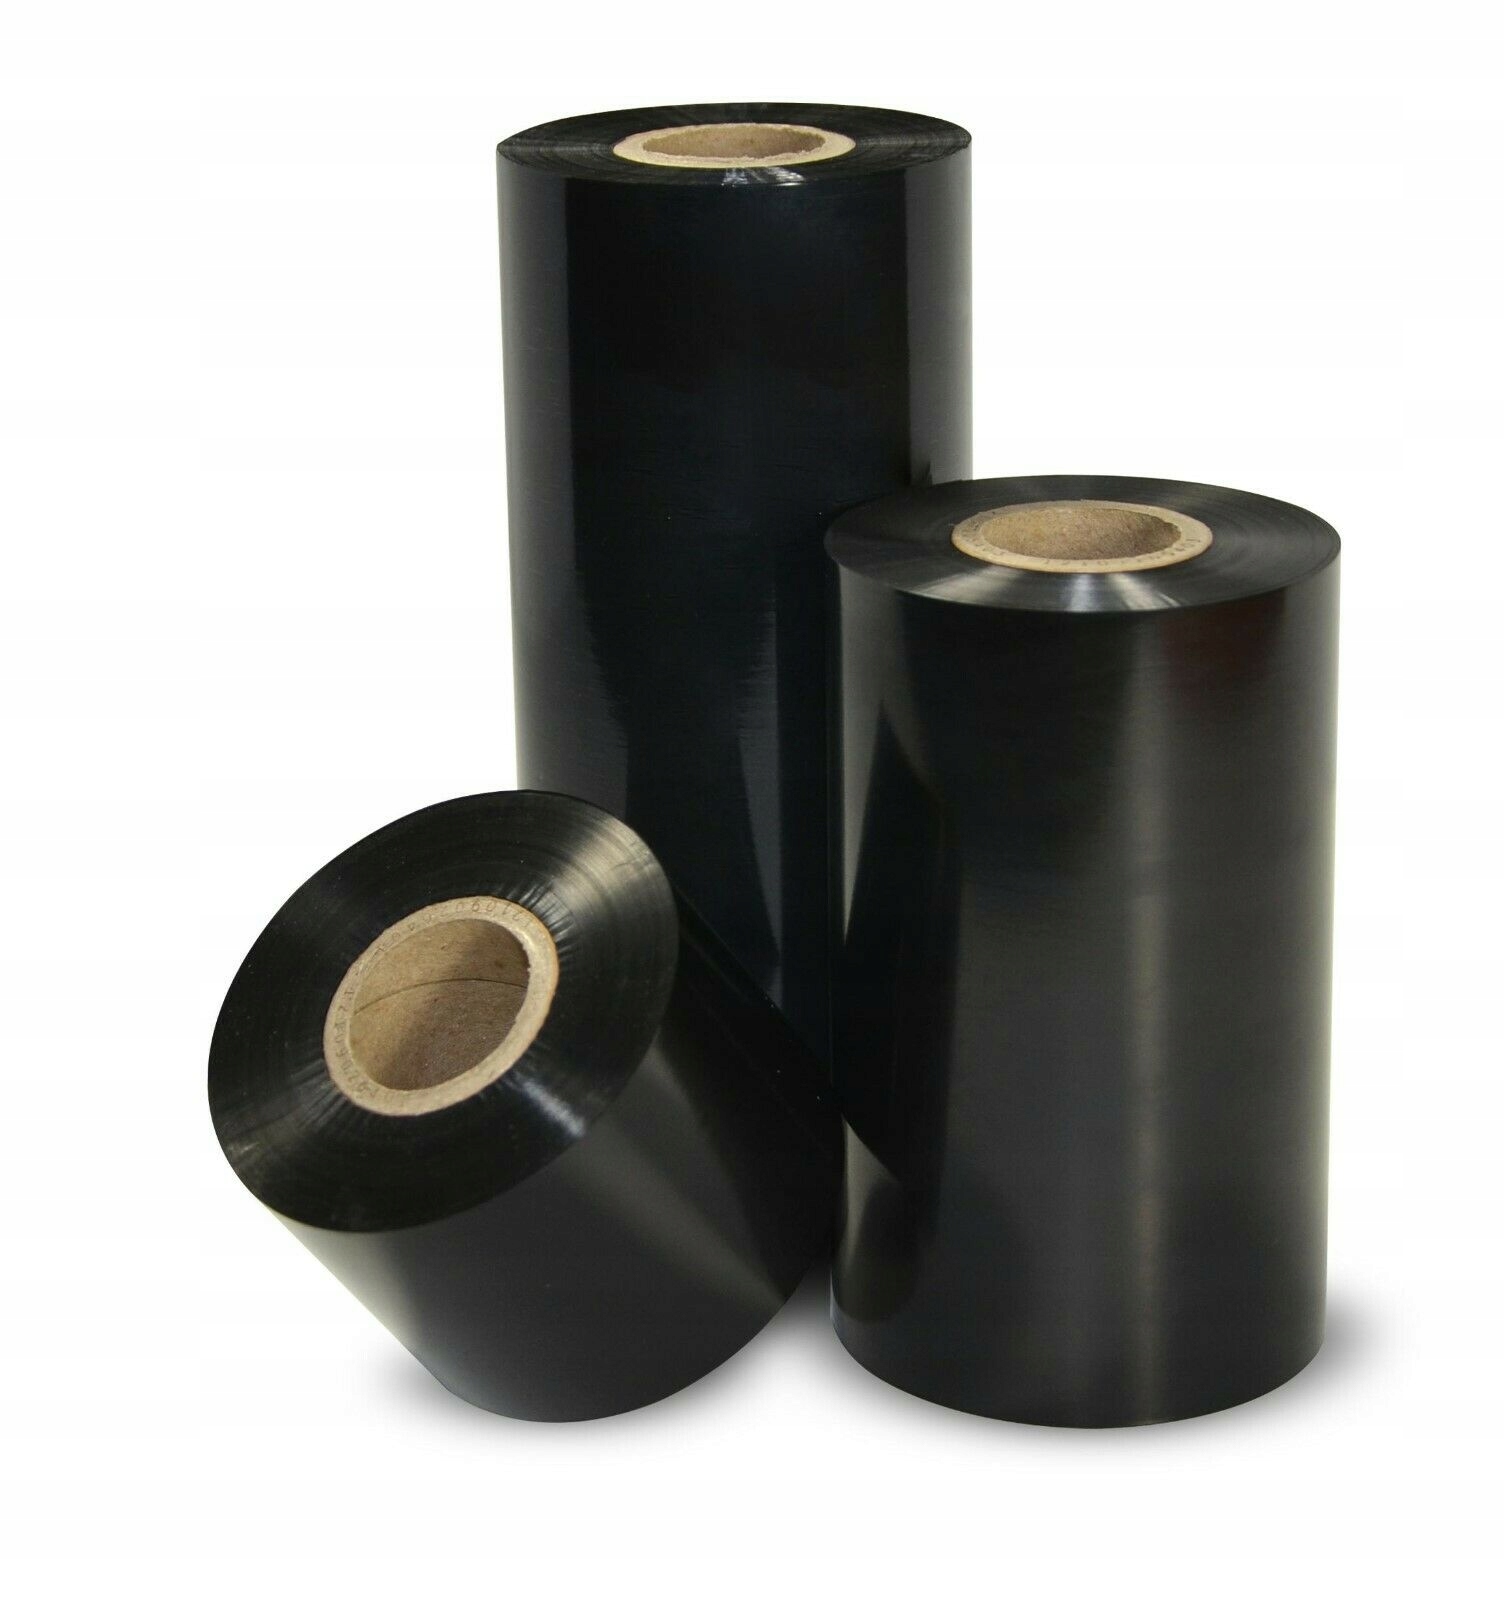 Риббон Воск-смола (wax-resin) 40 мм х 300 м, ширина втулки 40 мм, диаметр 1" (25,4 мм)